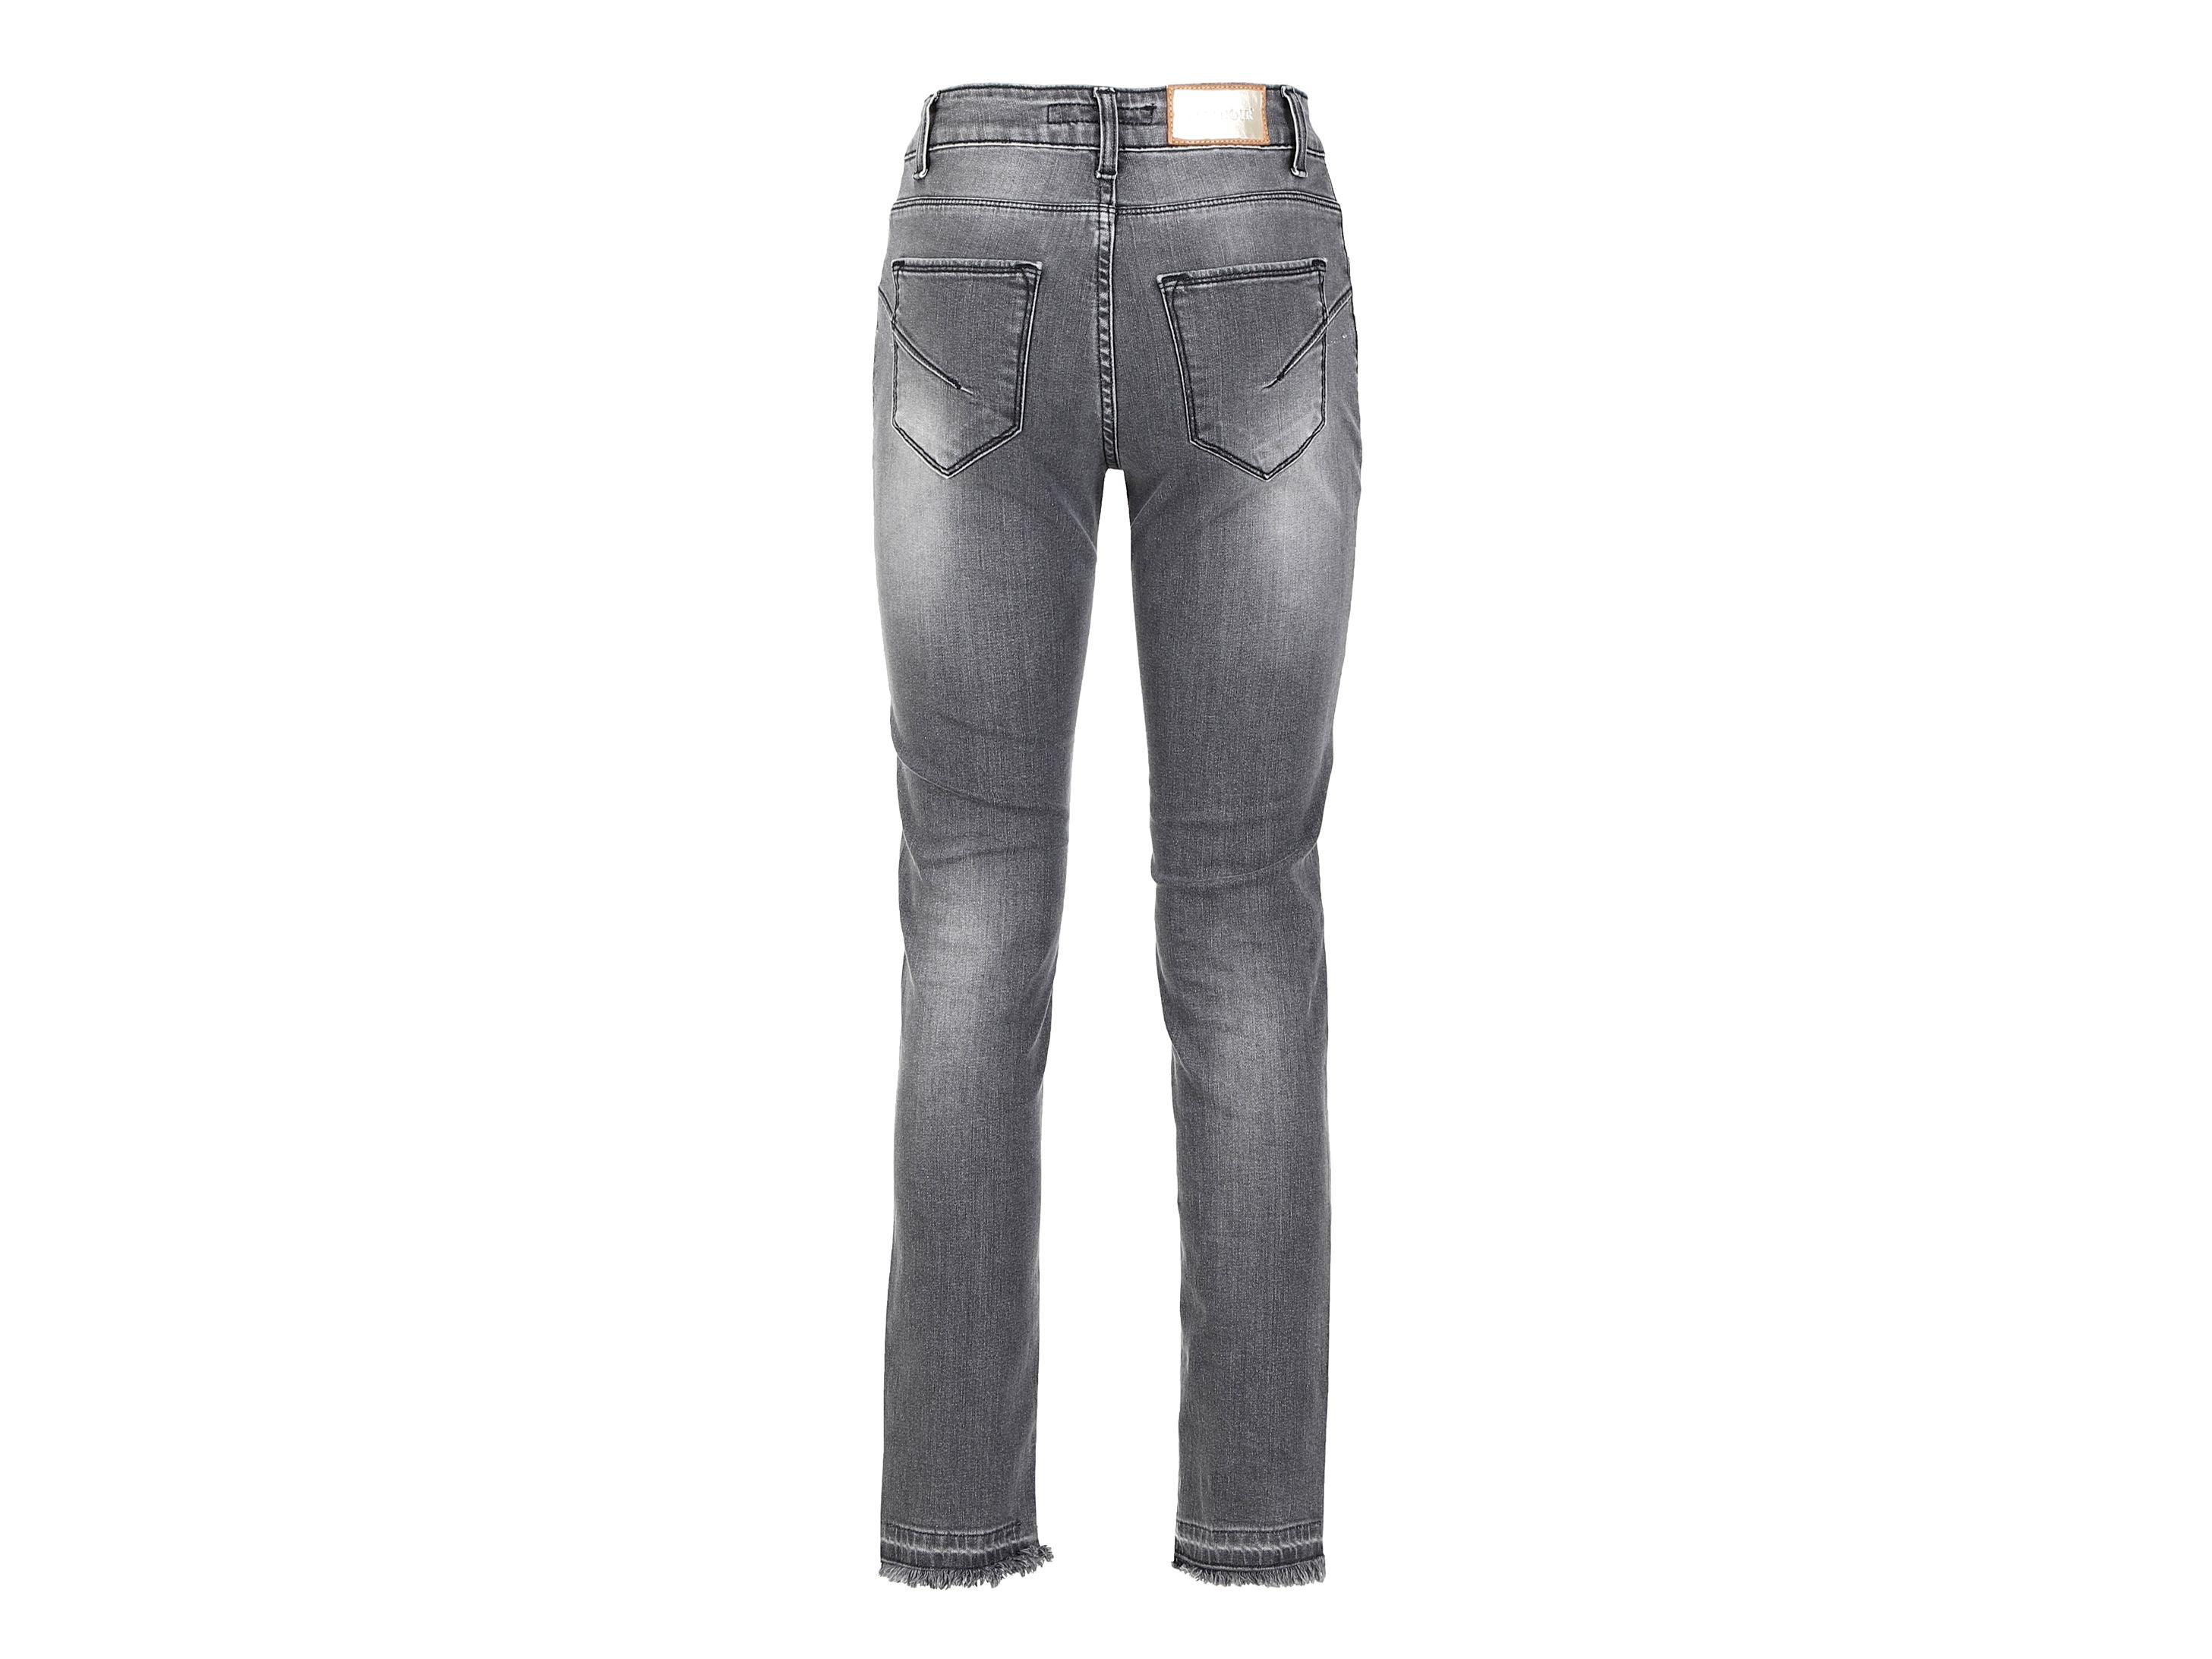 CAFENOIR Jeans Bande Pailettes Grigio JJ0006 - Sandrini Calzature e Abbigliamento